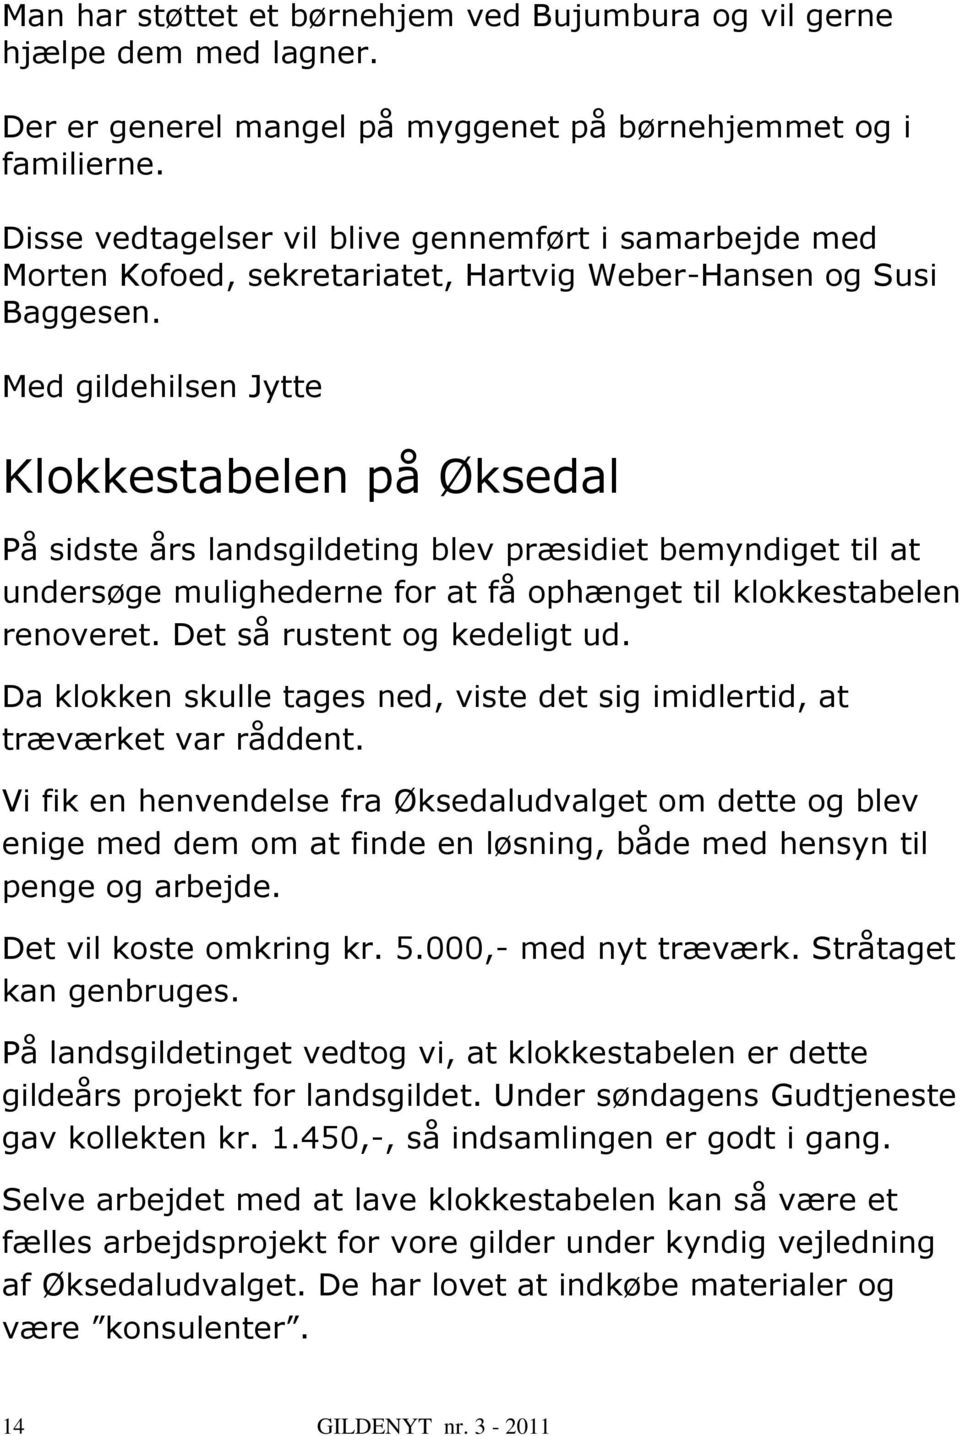 Med gildehilsen Jytte Klokkestabelen på Øksedal På sidste års landsgildeting blev præsidiet bemyndiget til at undersøge mulighederne for at få ophænget til klokkestabelen renoveret.